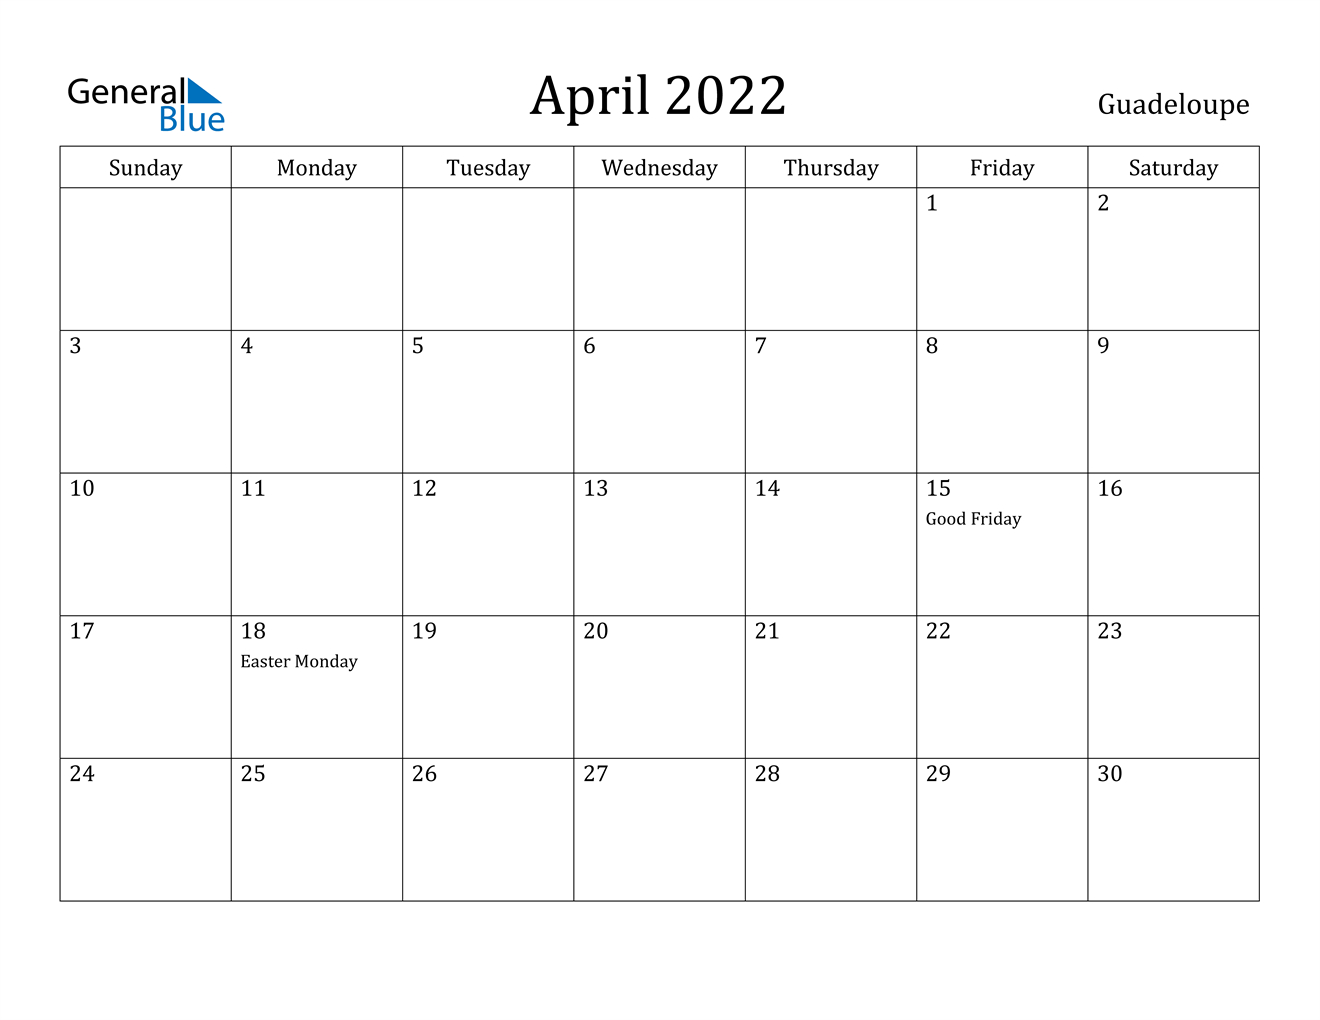 Take Calendar Page Of April 2022